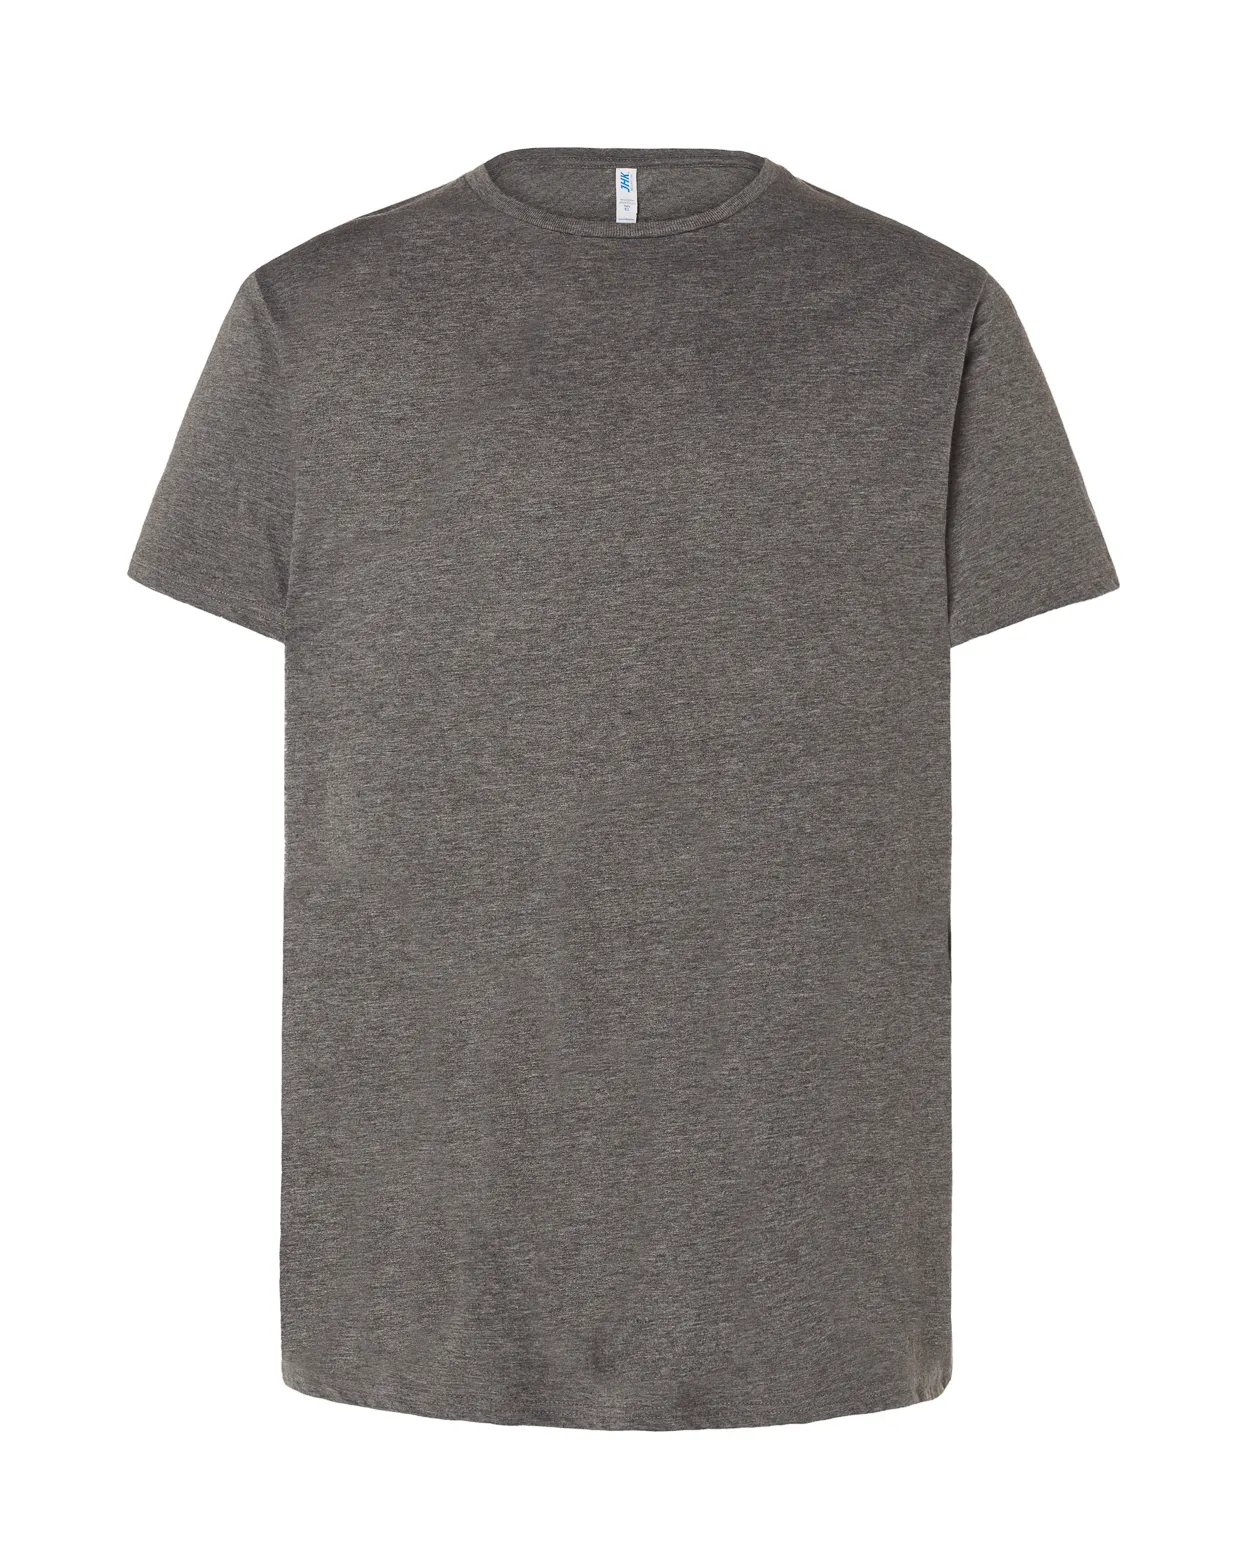 Homens T-shirt de Manga Curta 100% Algodão de Praia e casual impressão personalizada verão camisa estilo technics